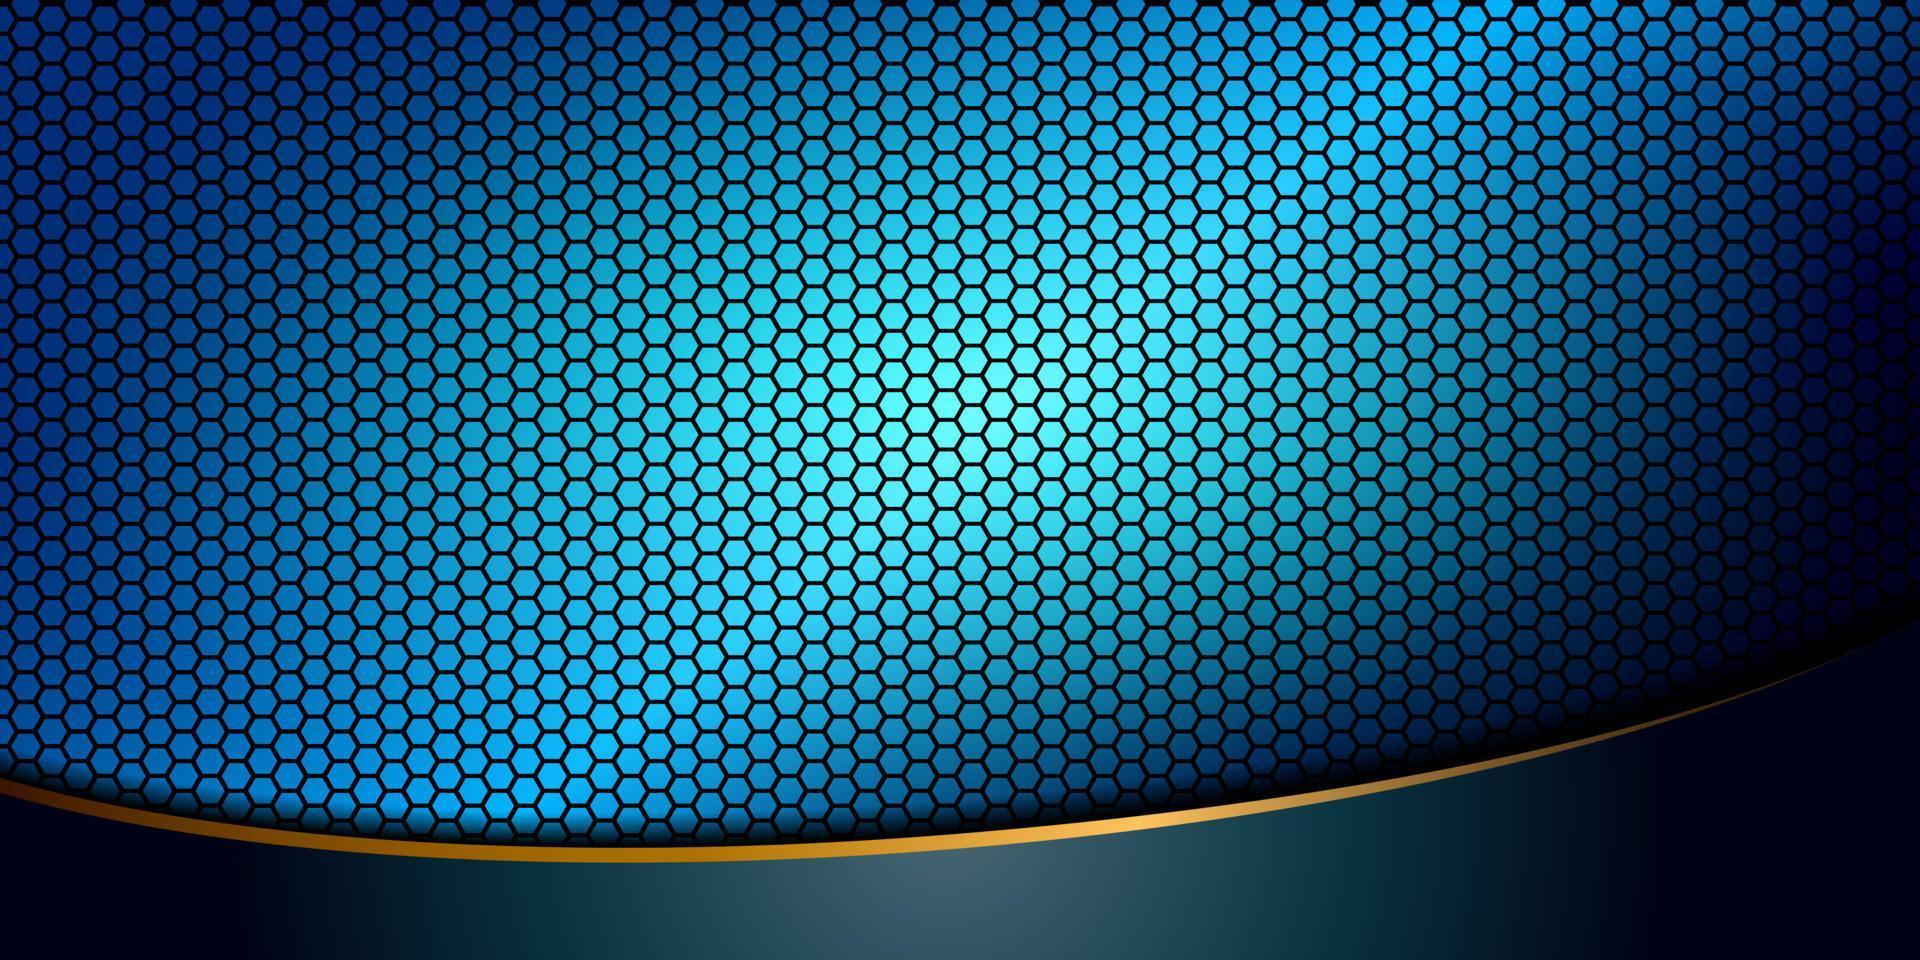 hexágono azul matiz imagem de fundo abstrato abaixo com listras curvas turquesa com bordas de ouro. ilustração vetorial vetor